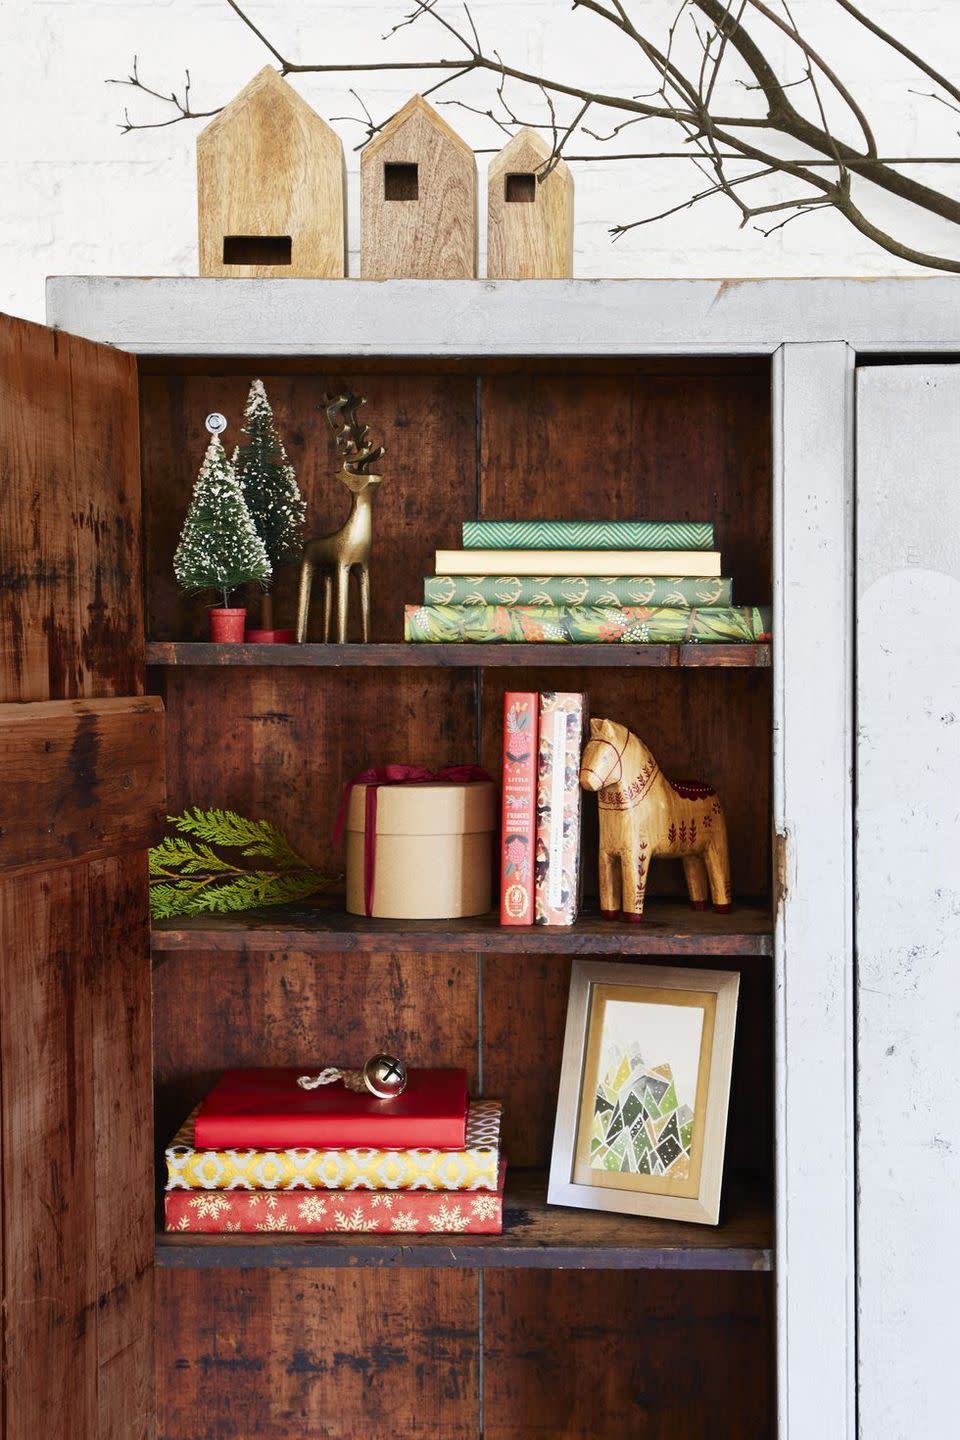 <p>Unos pocos elementos pueden transformar la decoración de tu hogar de "cotidiana" a mágica y navideña. En esta librería una alineación de casas de madera, renos dorados y microárboles traen un país de las maravillas invernal a una estantería.</p>